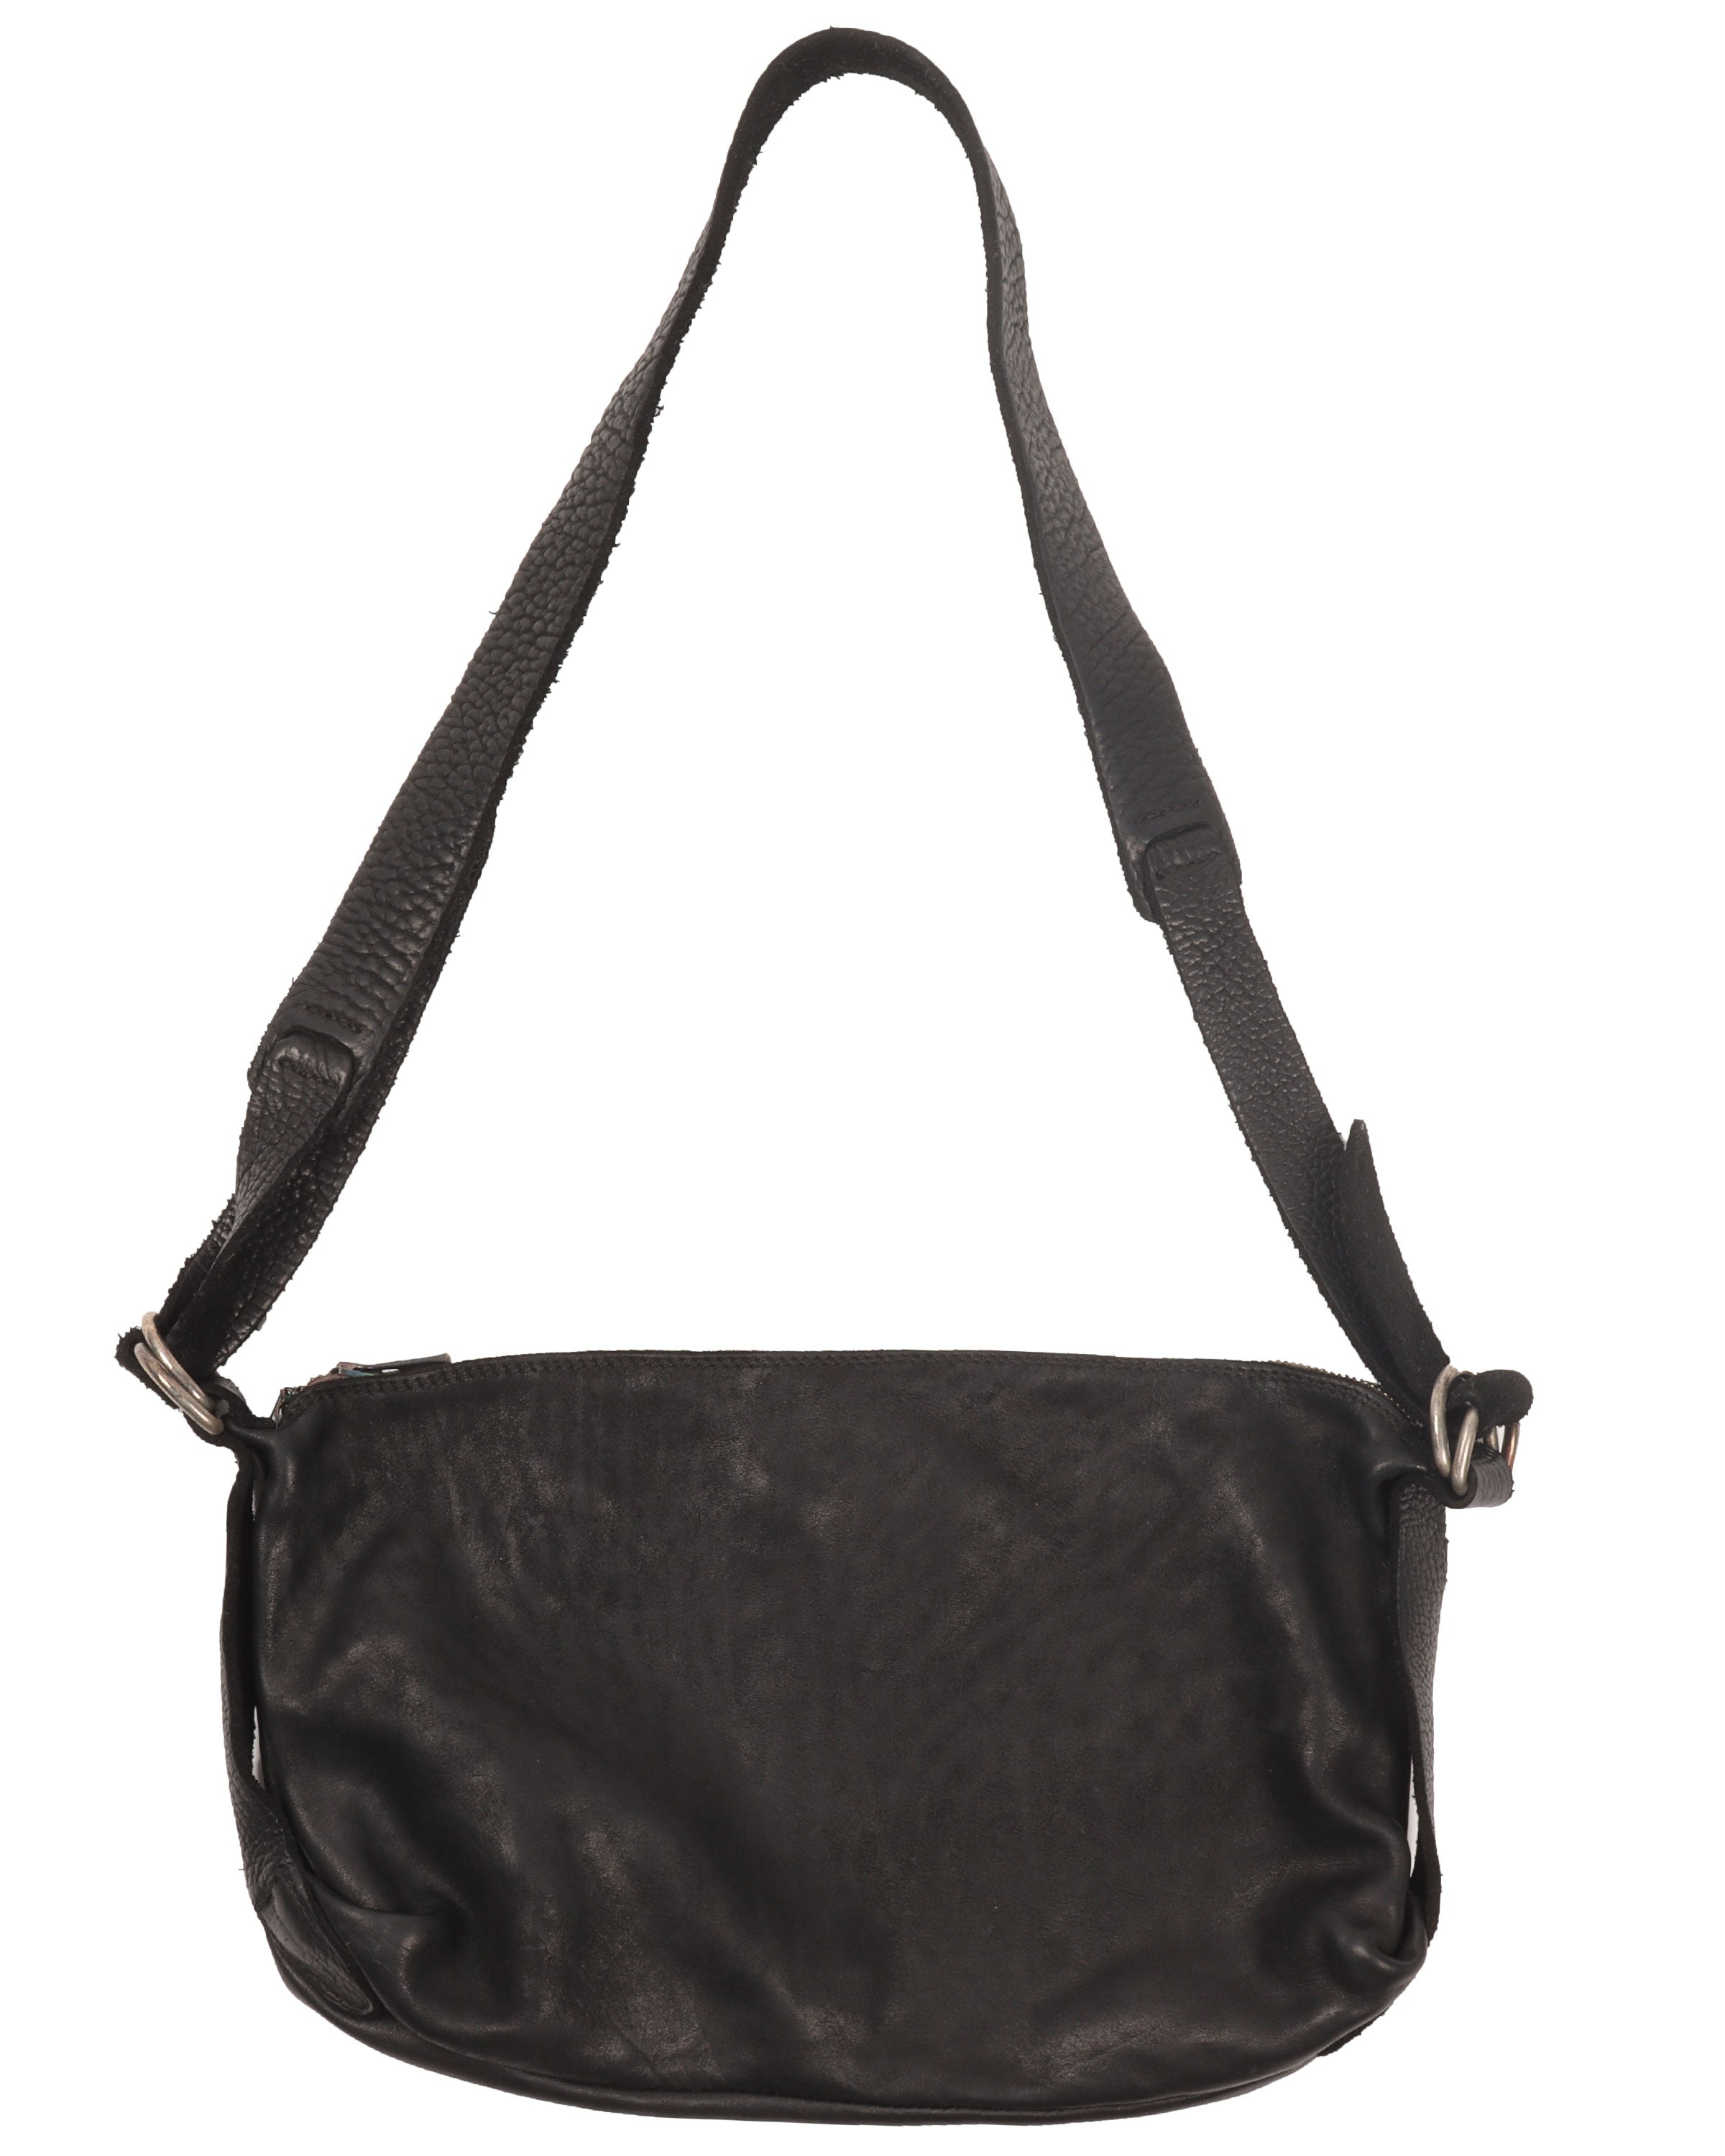 Q150 Leather Bag